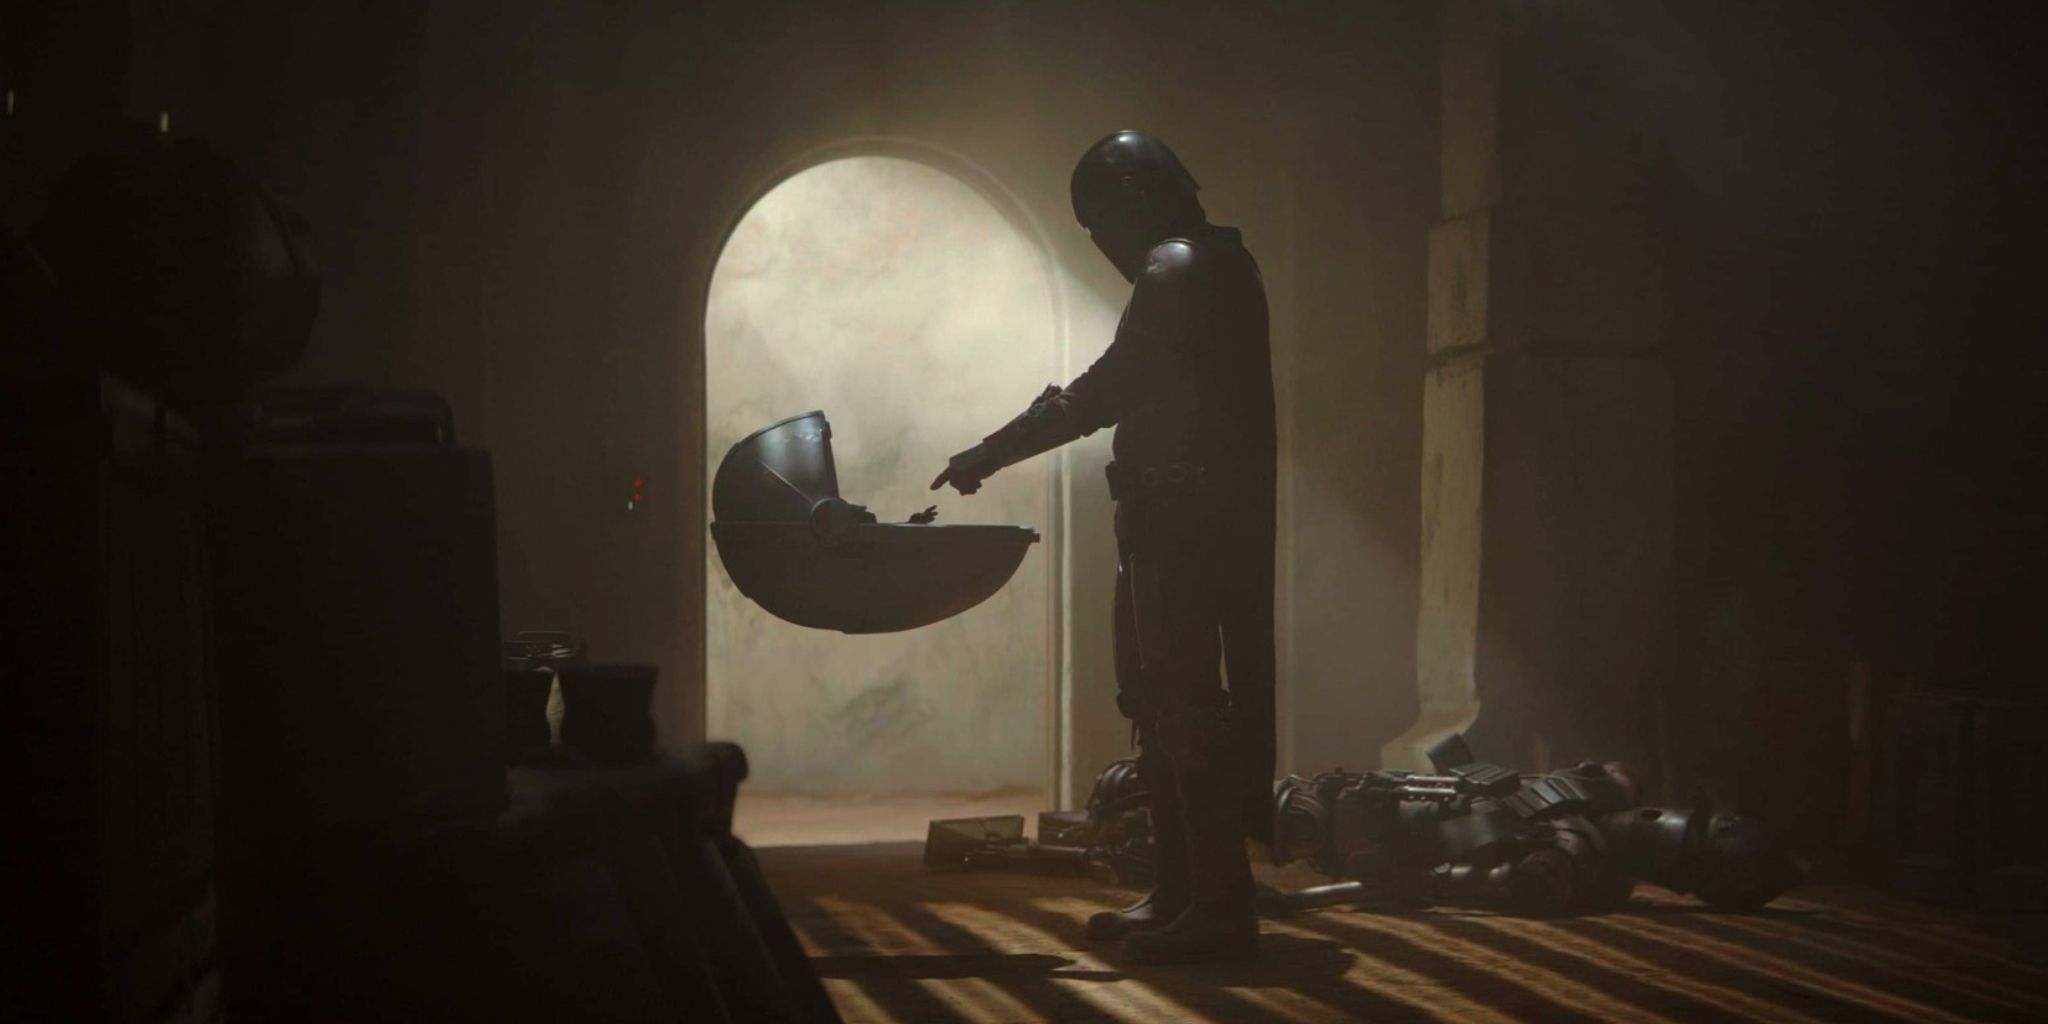 Din Djarin estende o dedo para Grogu no episódio 1 da 1ª temporada de The Mandalorian